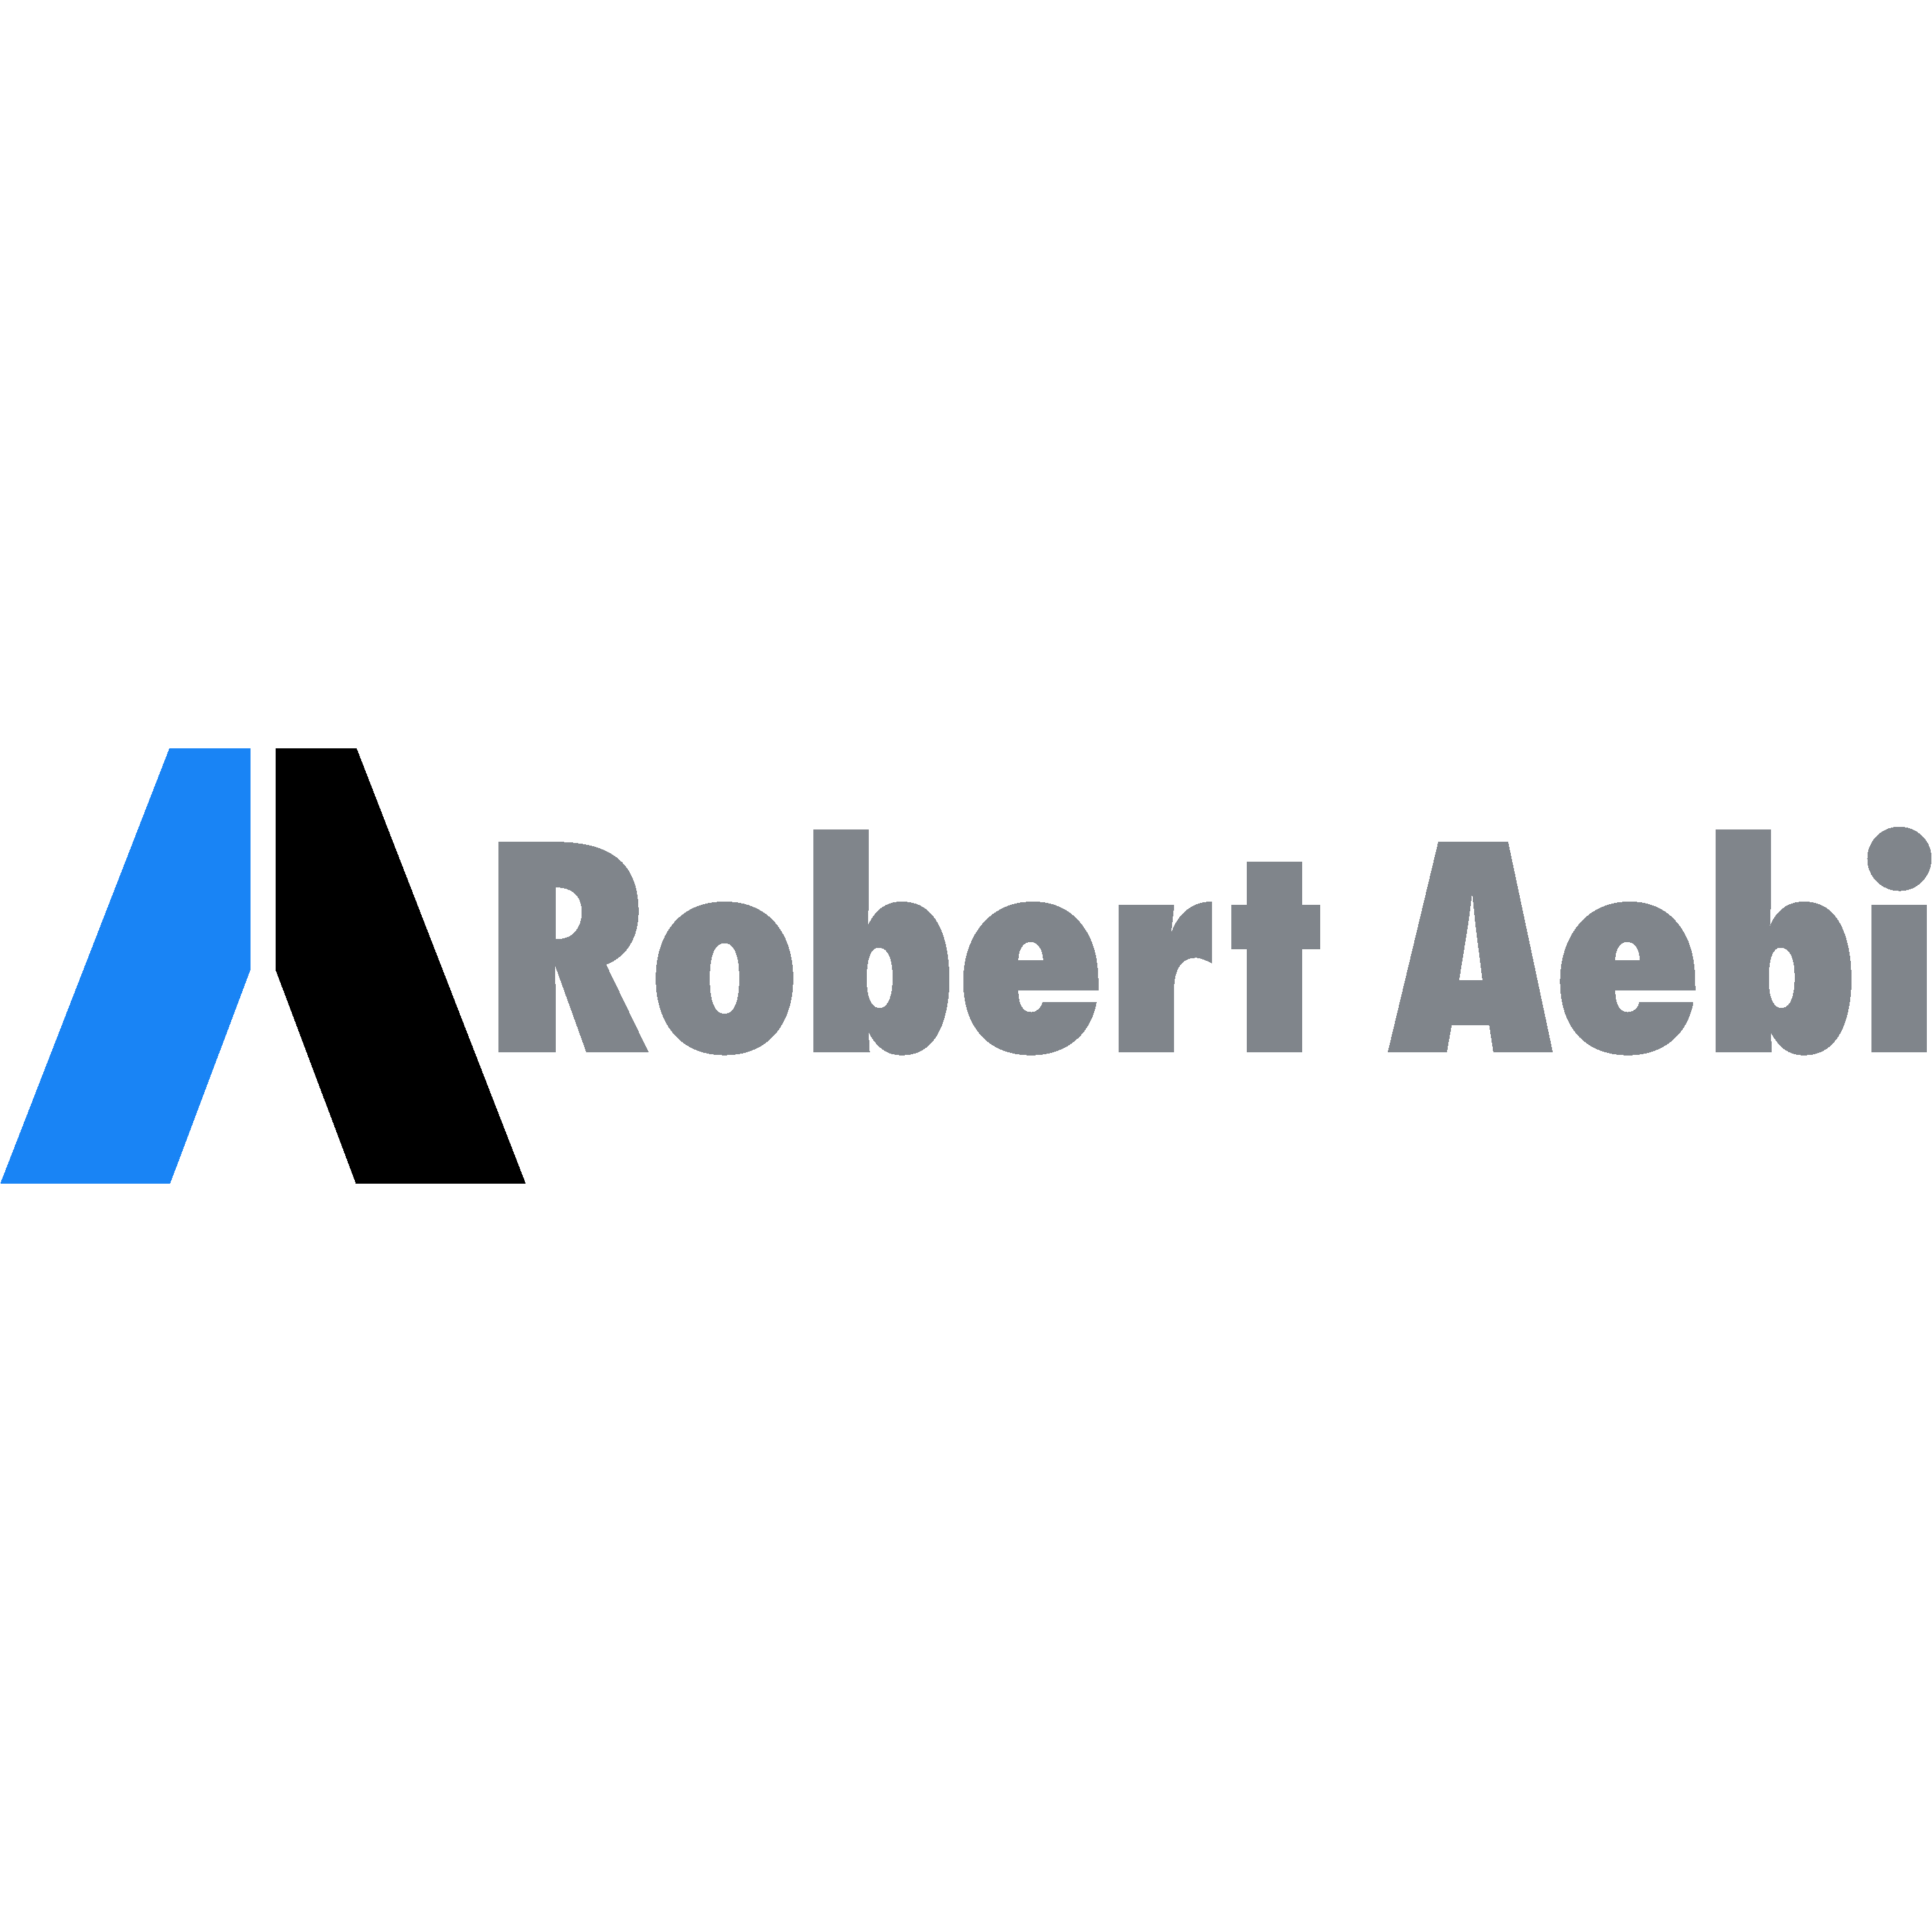 Rober Aebi Logo  Transparent Gallery